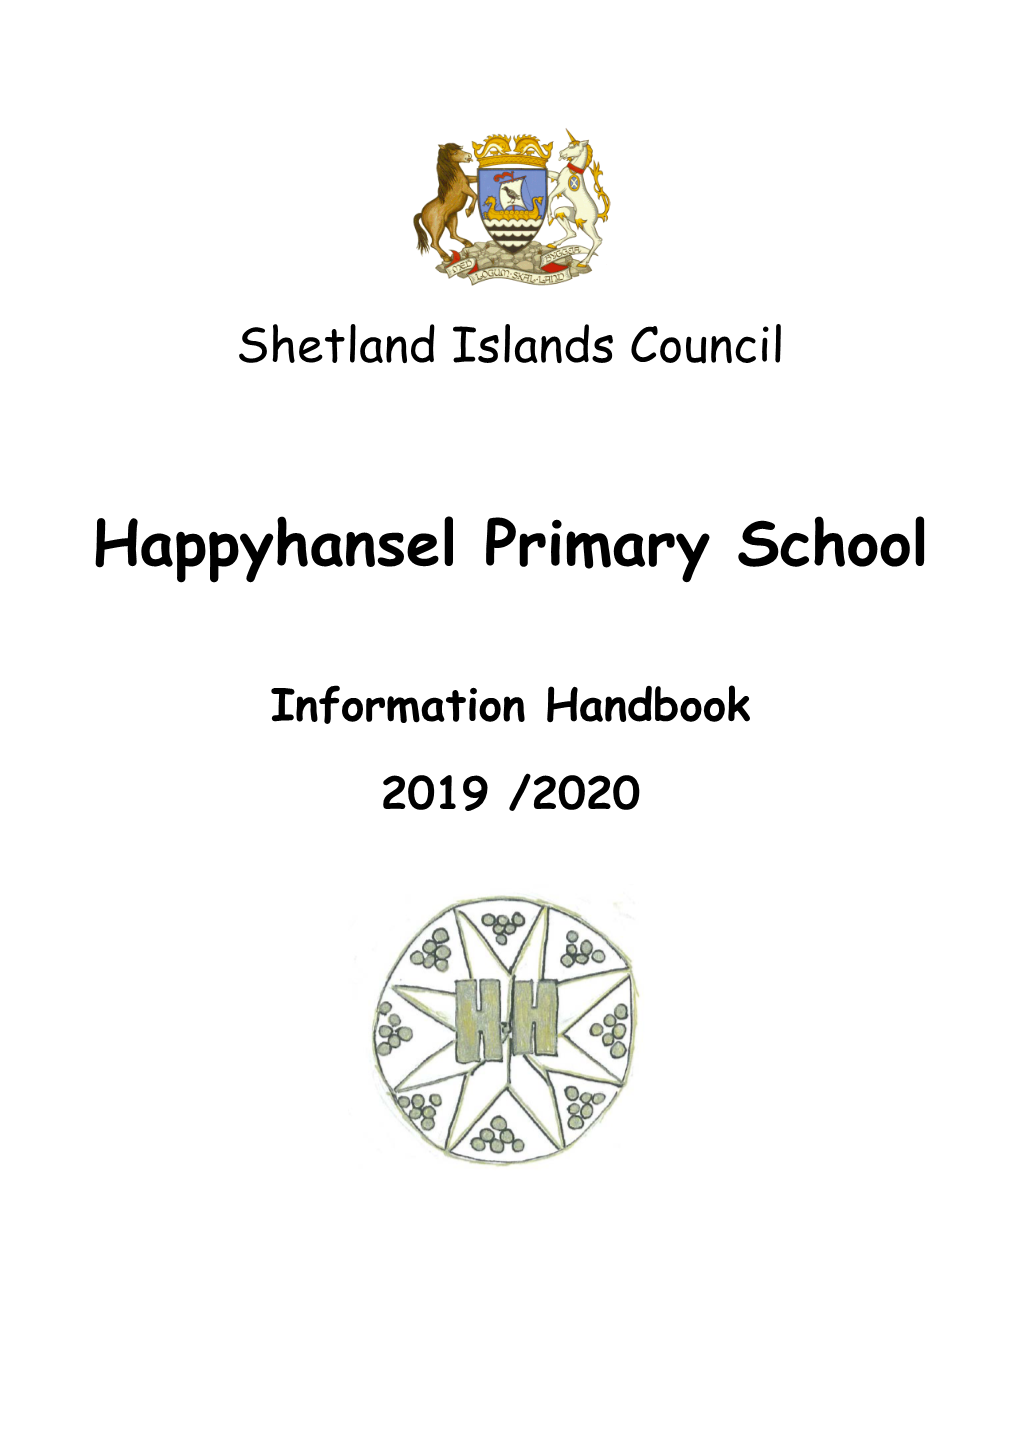 Happyhansel Primary School